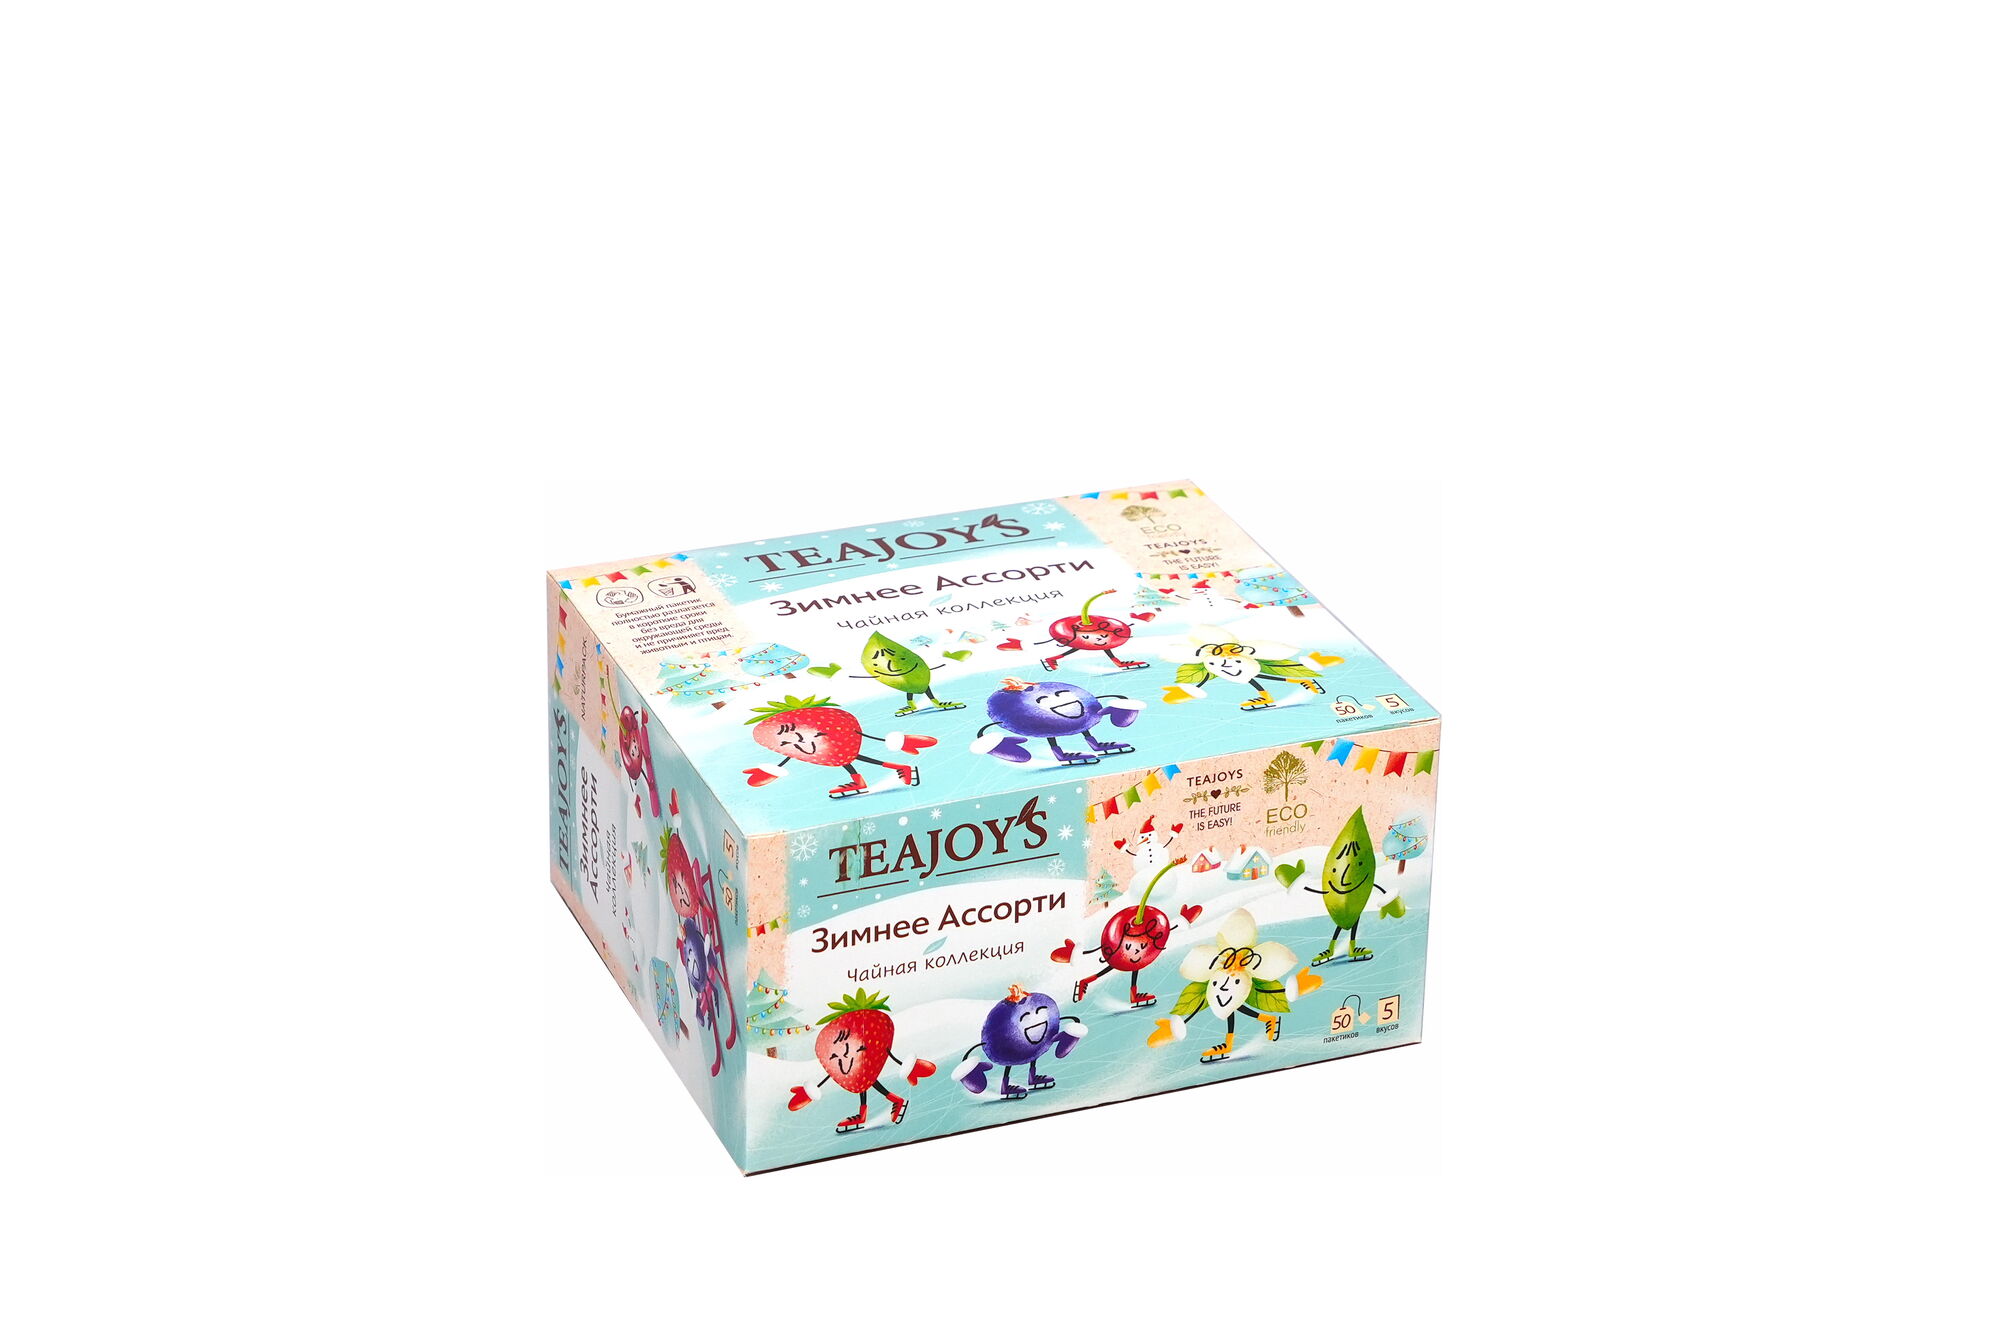 Чай TeaJoy`S Зимнее Ассорти 5 вкусов 50 пакетиков по 2 гр (в коробке 12 шт) 3